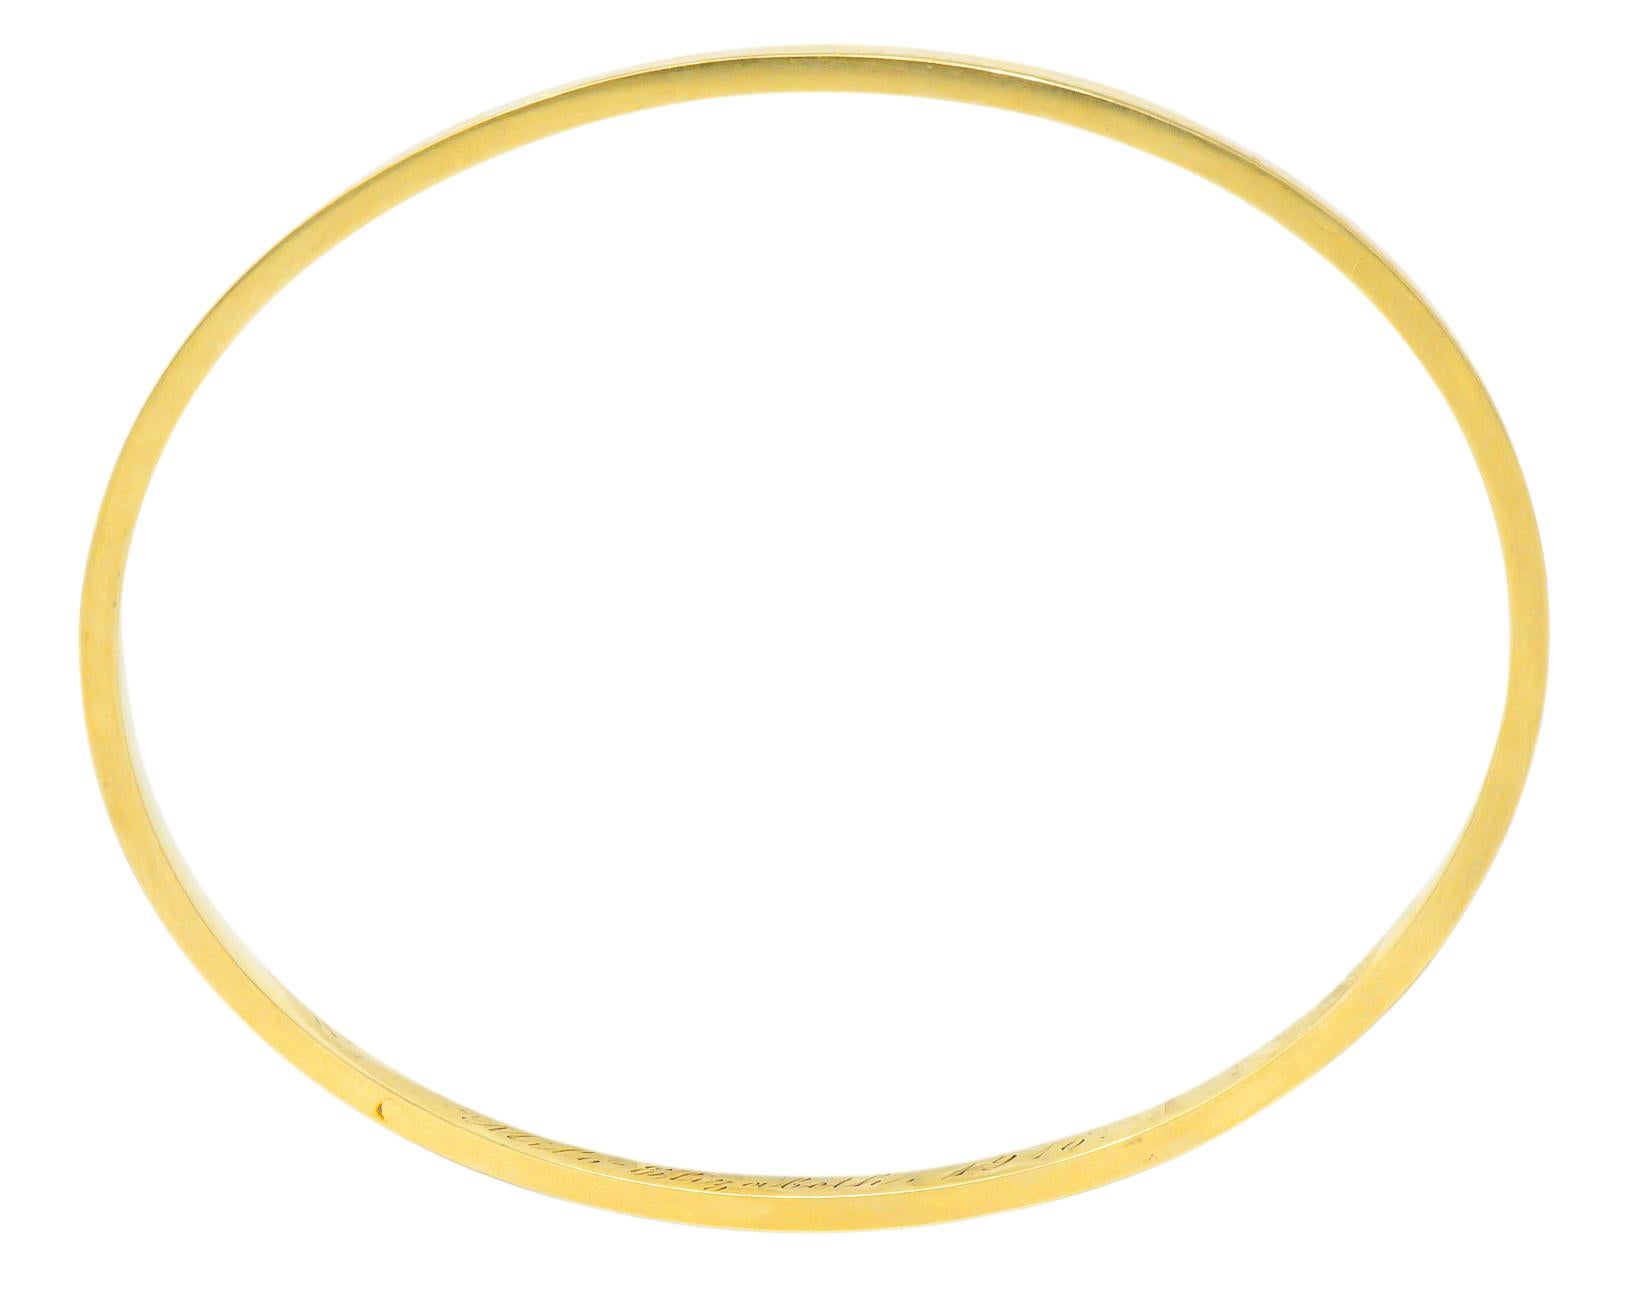 Sloan & Co. Edwardian 14 Karat Yellow Gold Bangle Bracelet 3